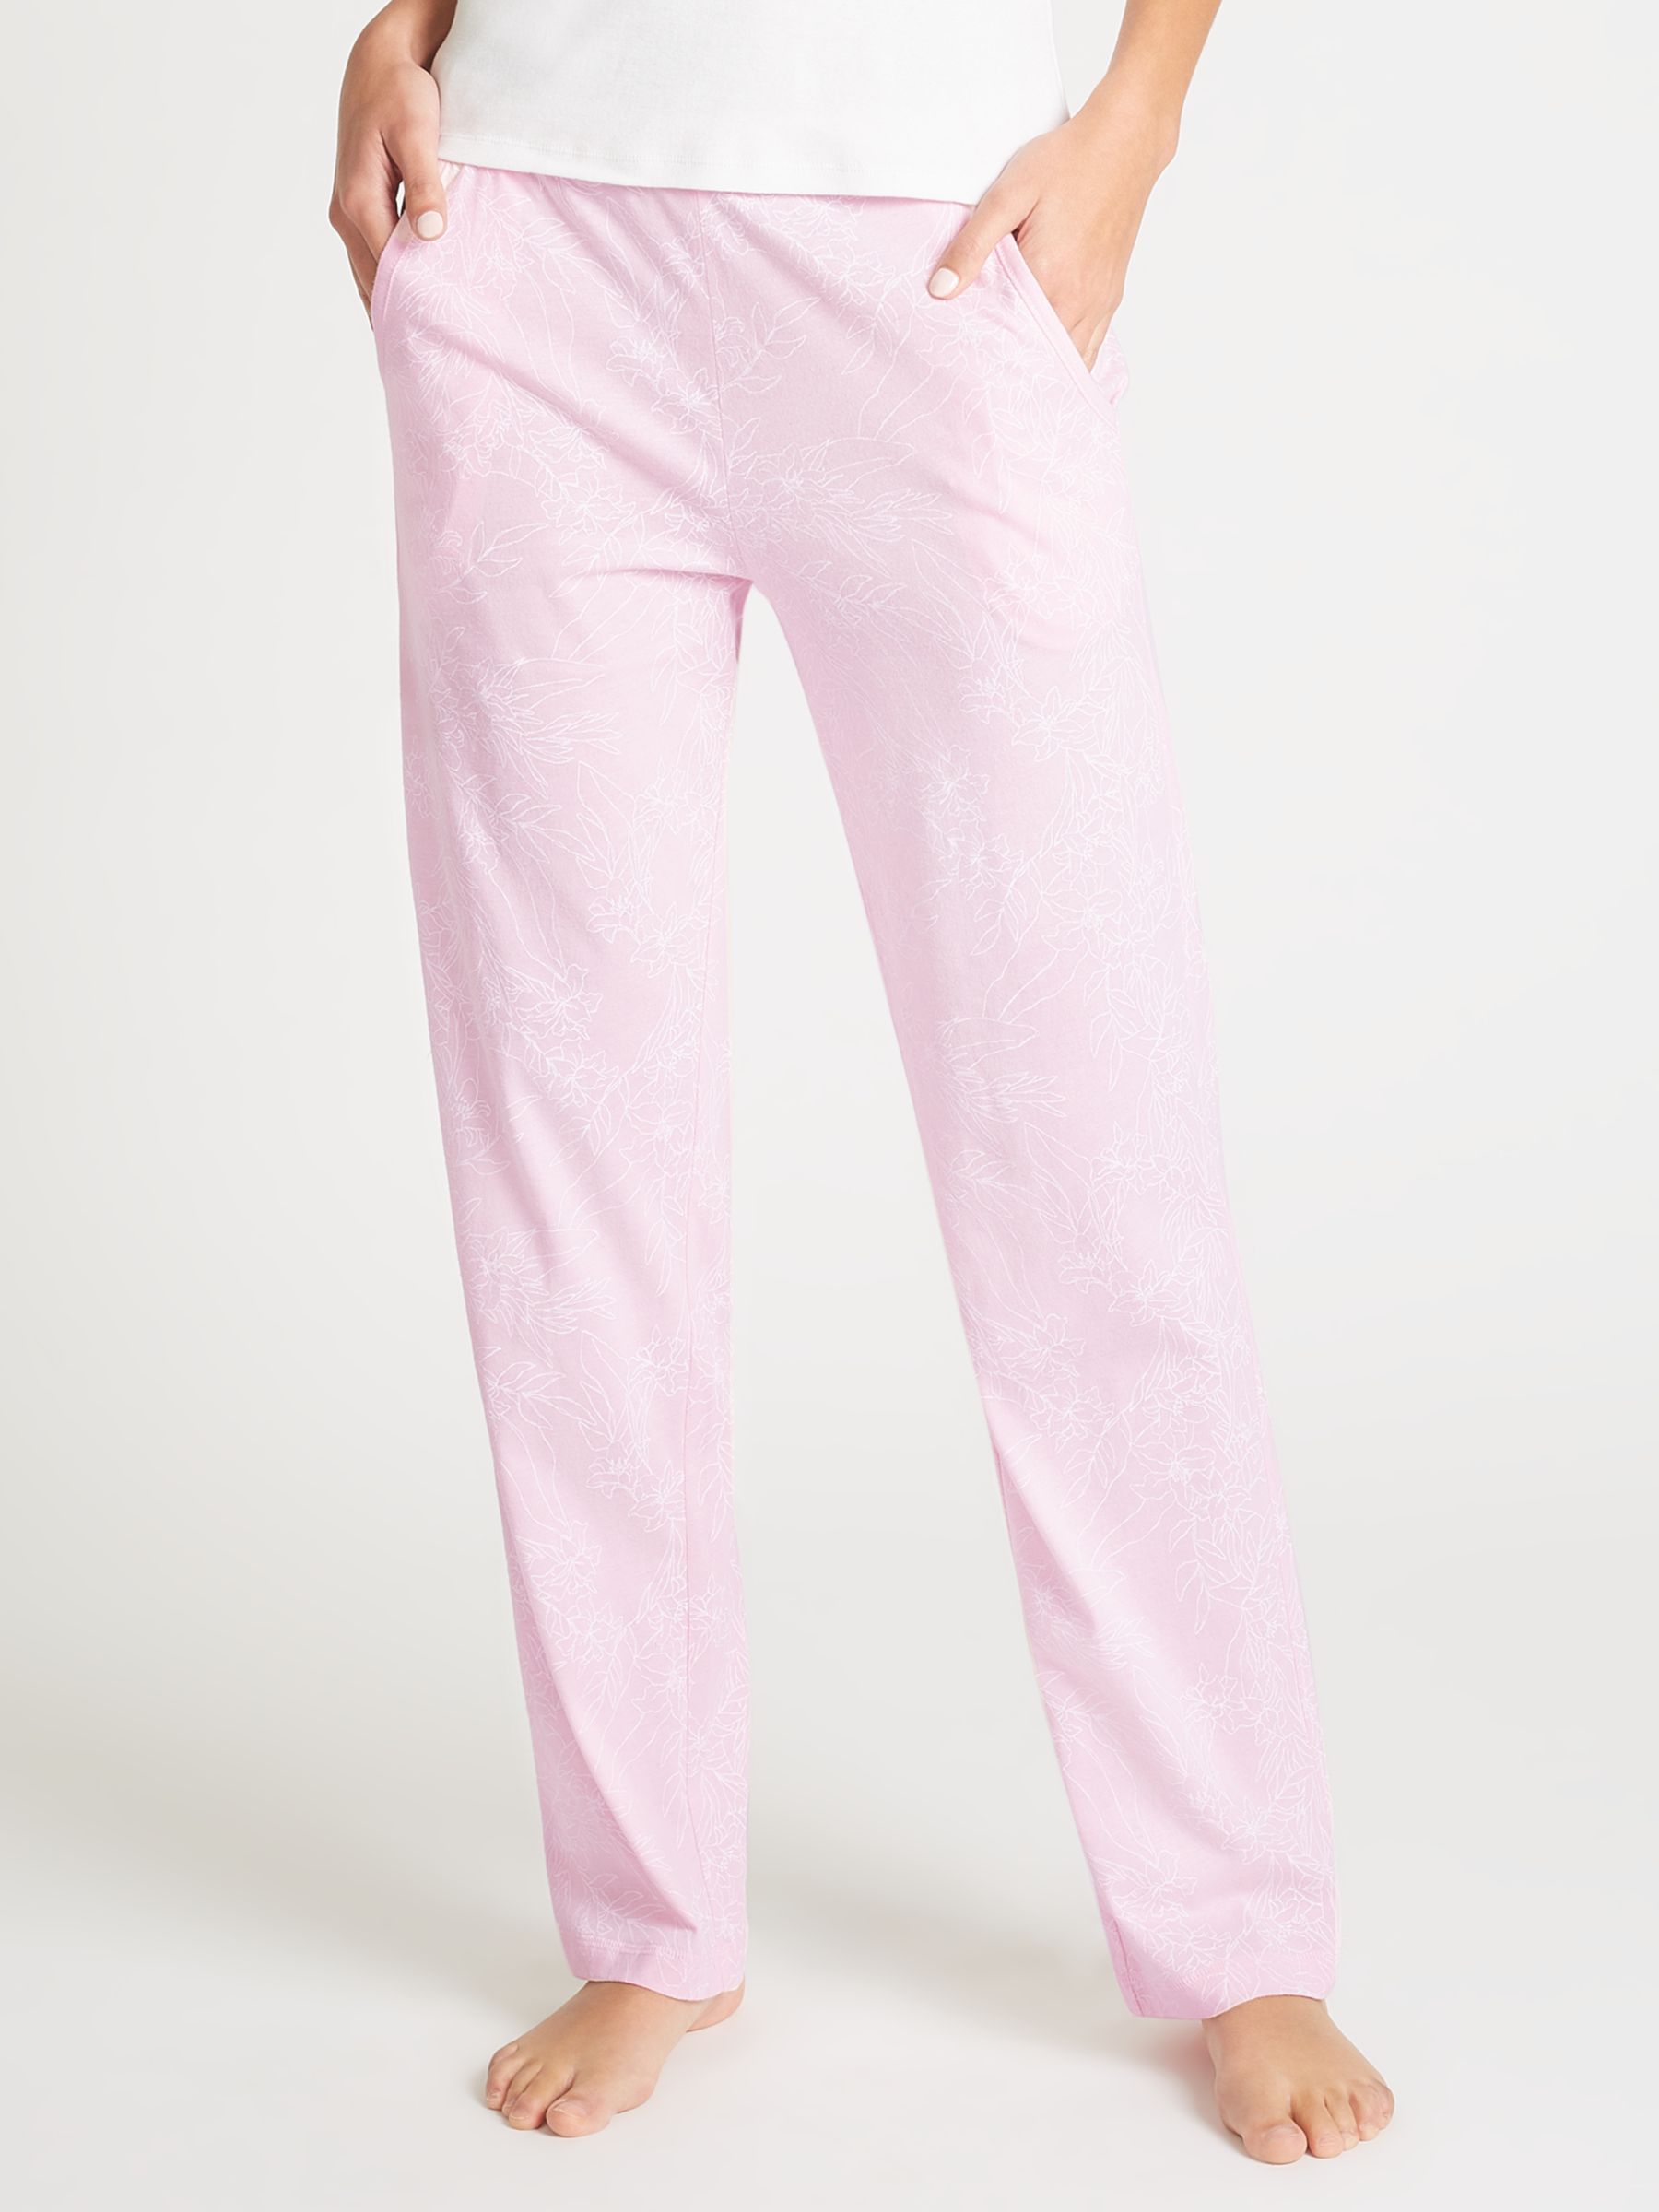 jersey pajama bottoms